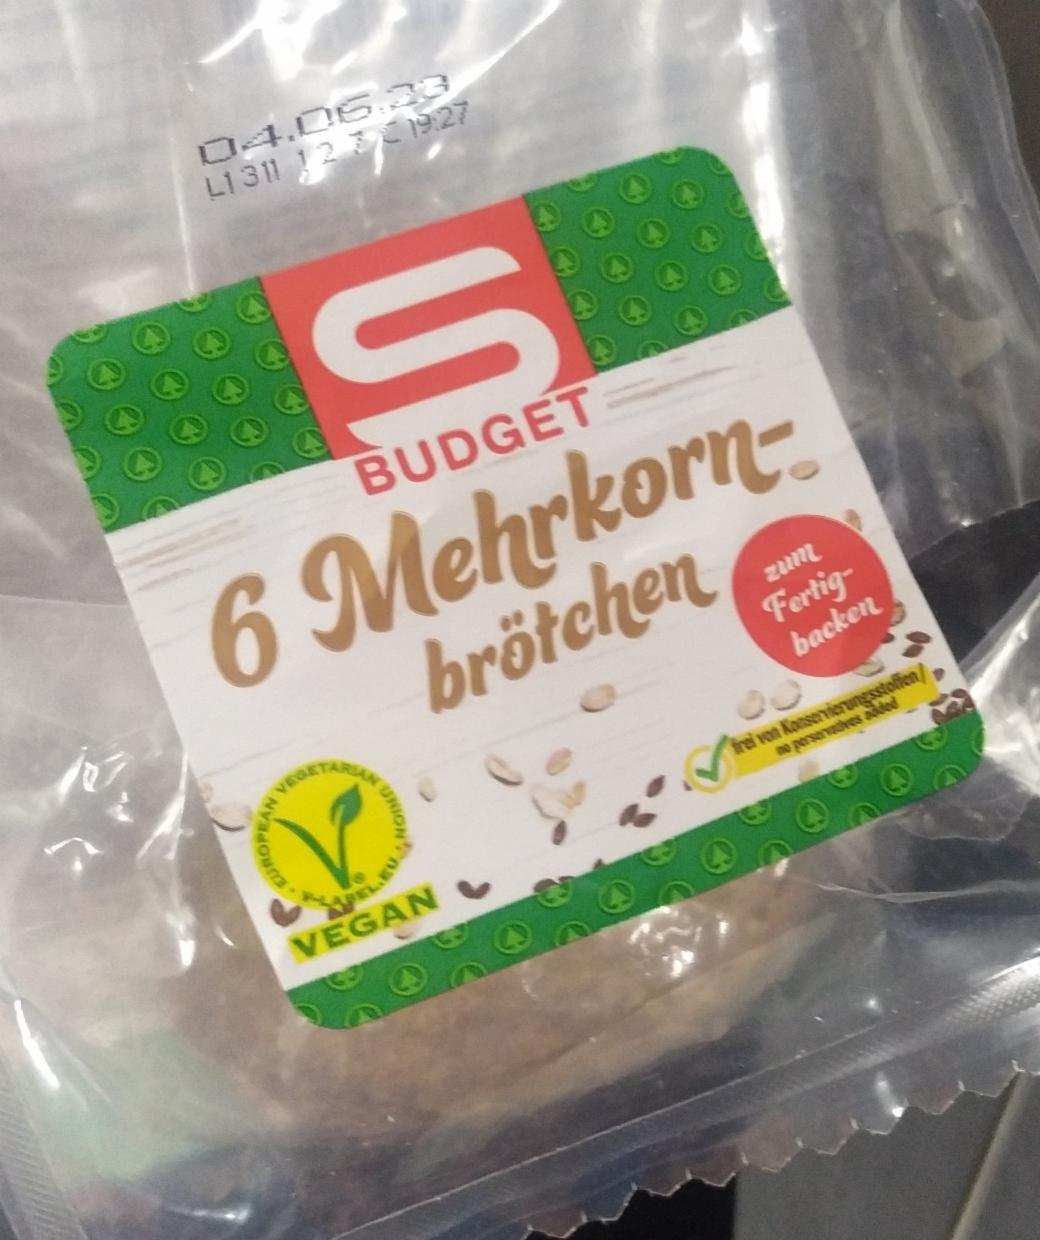 Fotografie - 6 Mehrkorn Brötchen S Budget